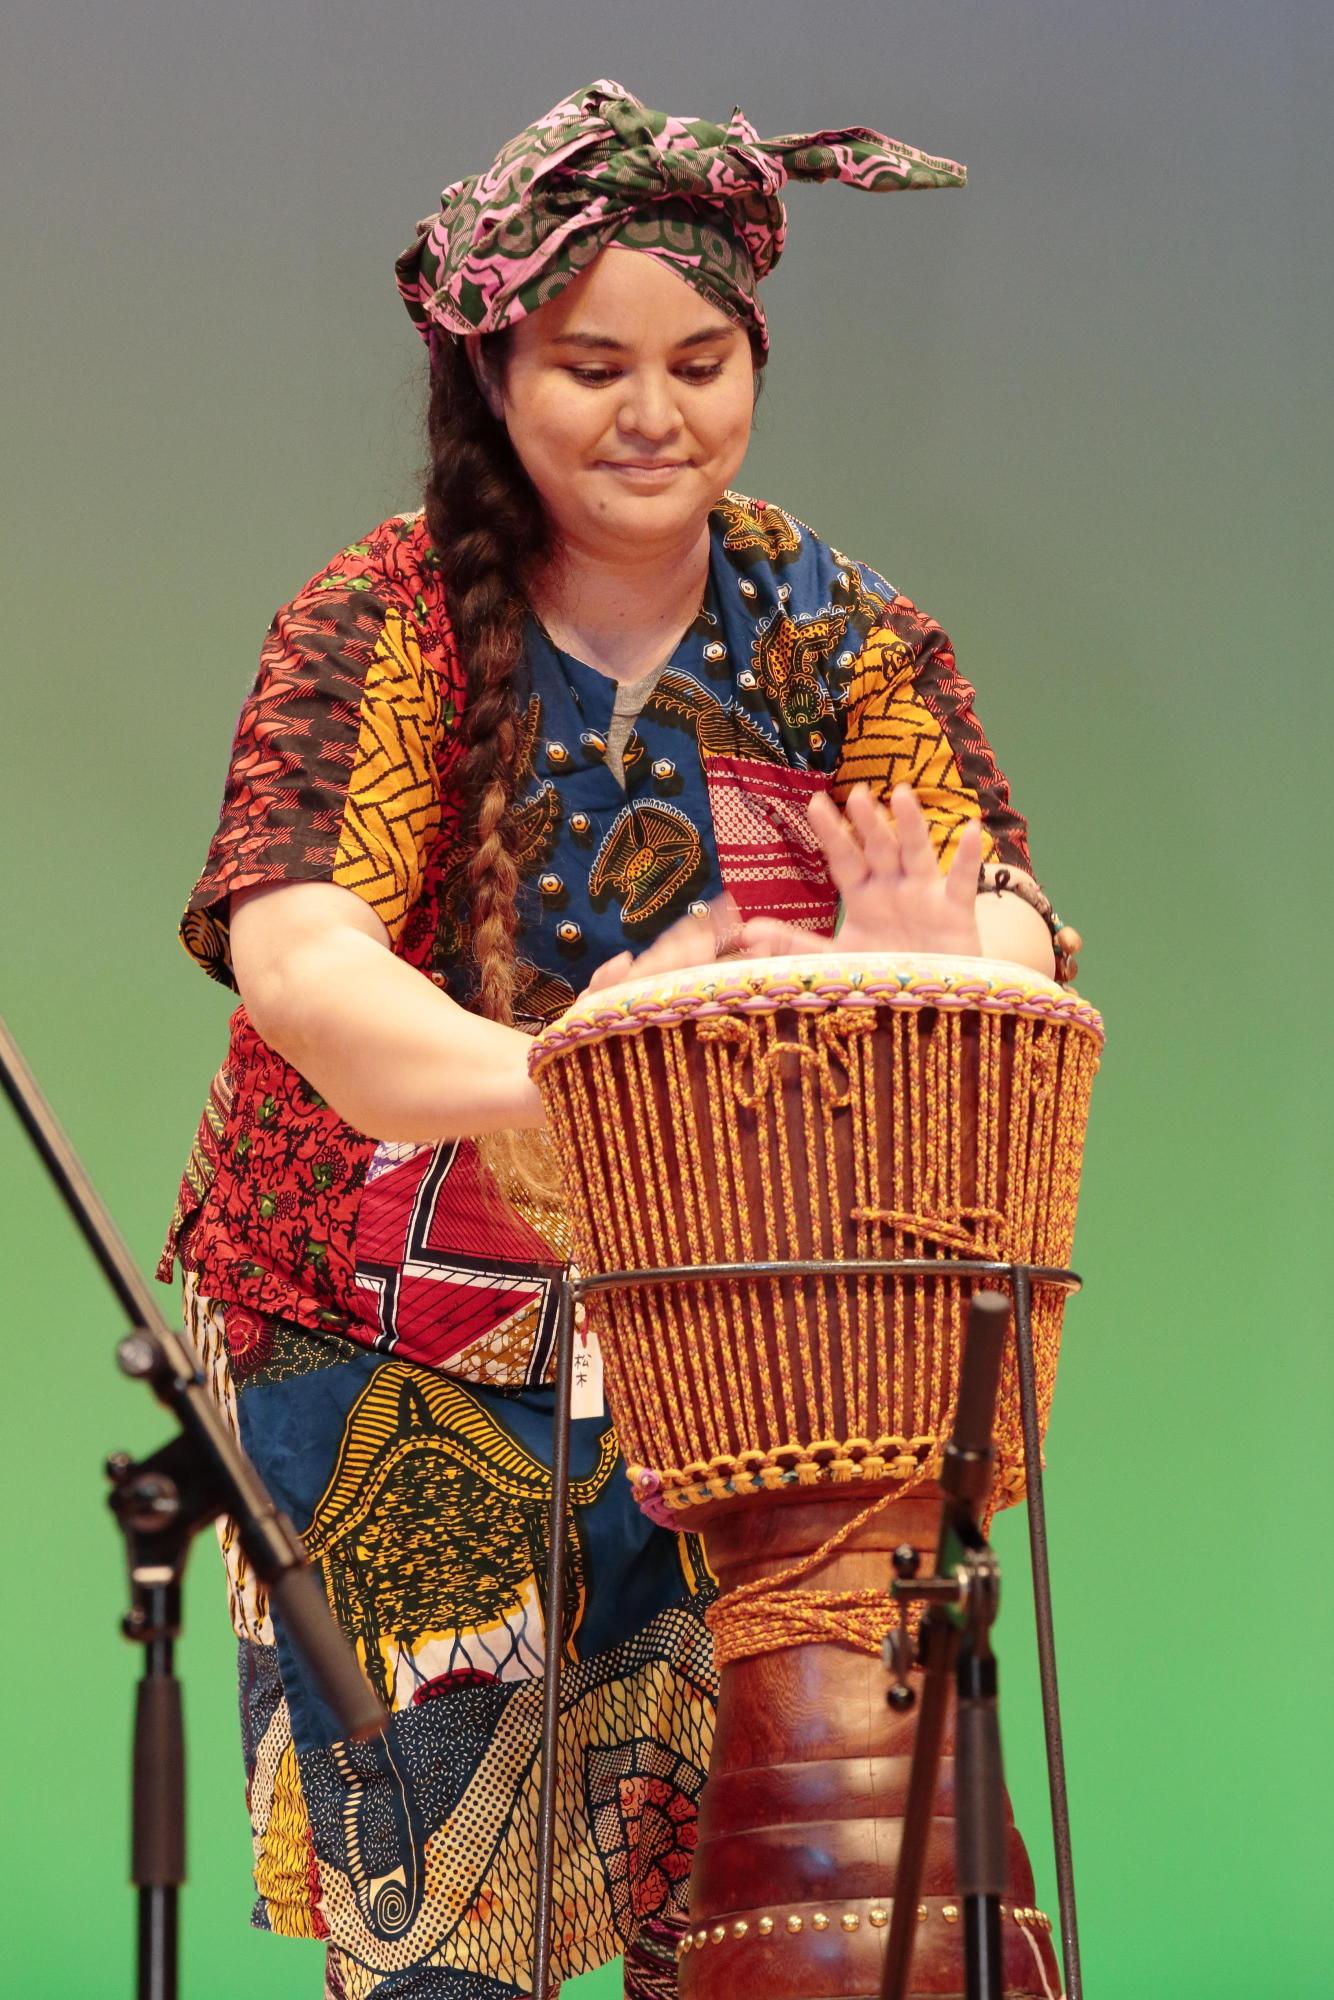 紐編みで側面を装飾された小太鼓のような形をしたアフリカの打楽器「ジャンベ」を演奏する女性の写真